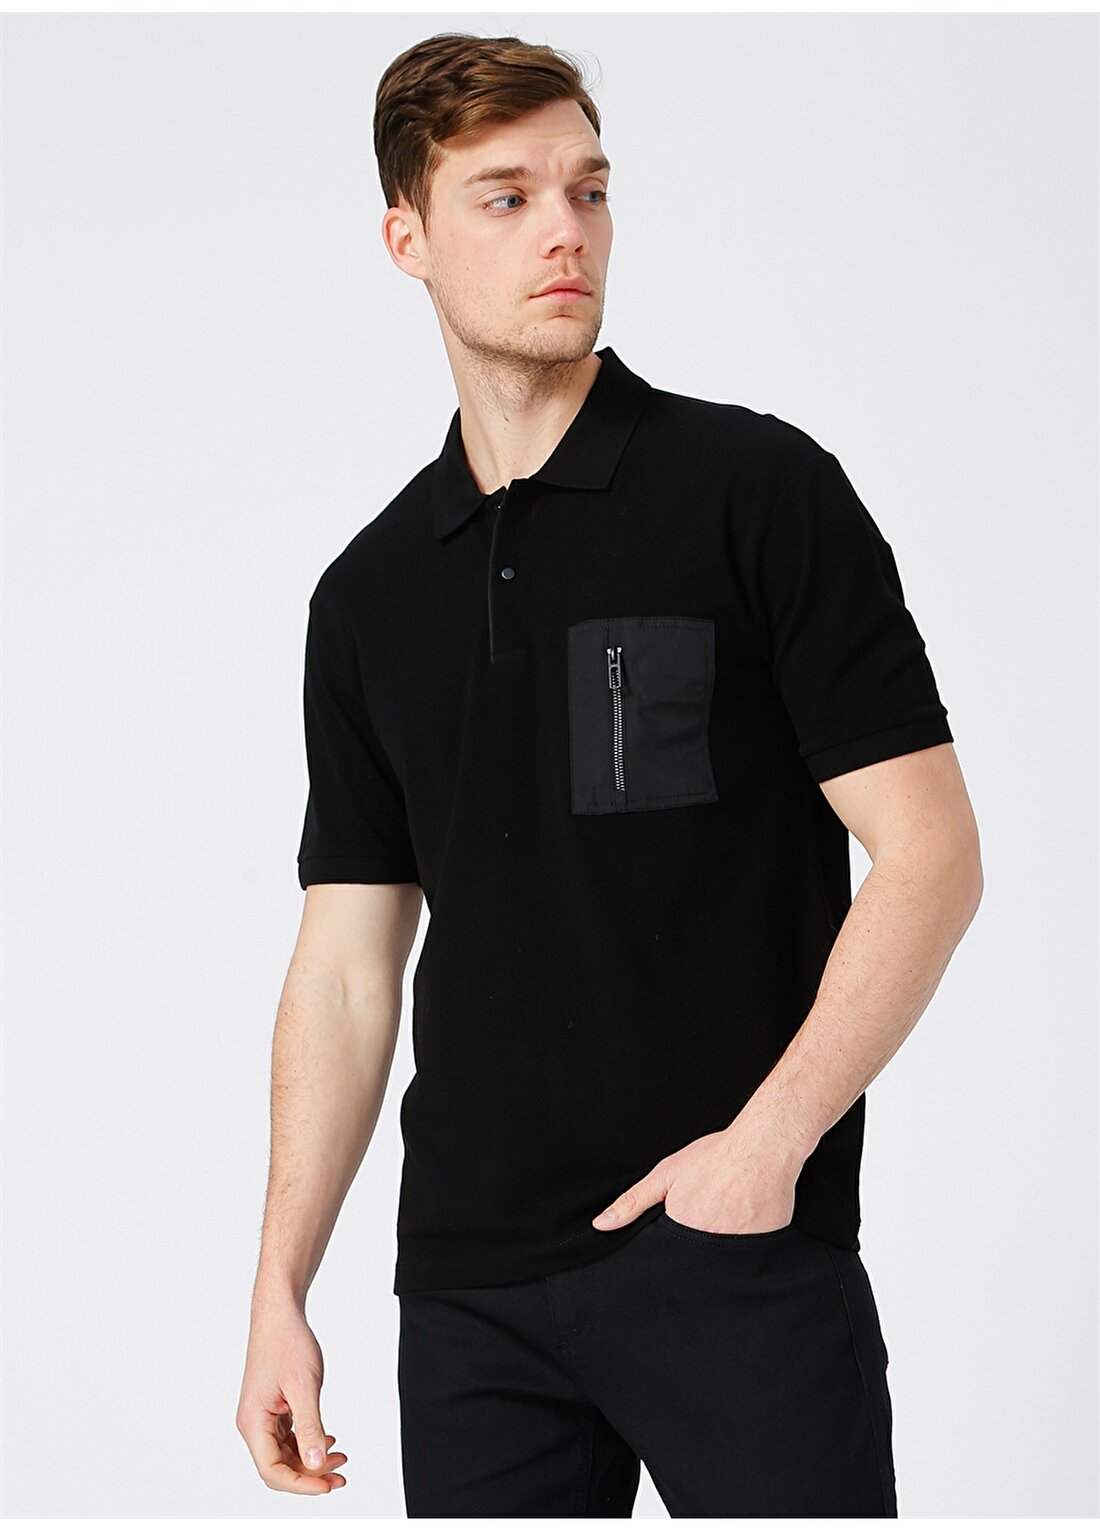 Network Erkek Düz Siyah Slim Fit Polo Yaka T-Shirt